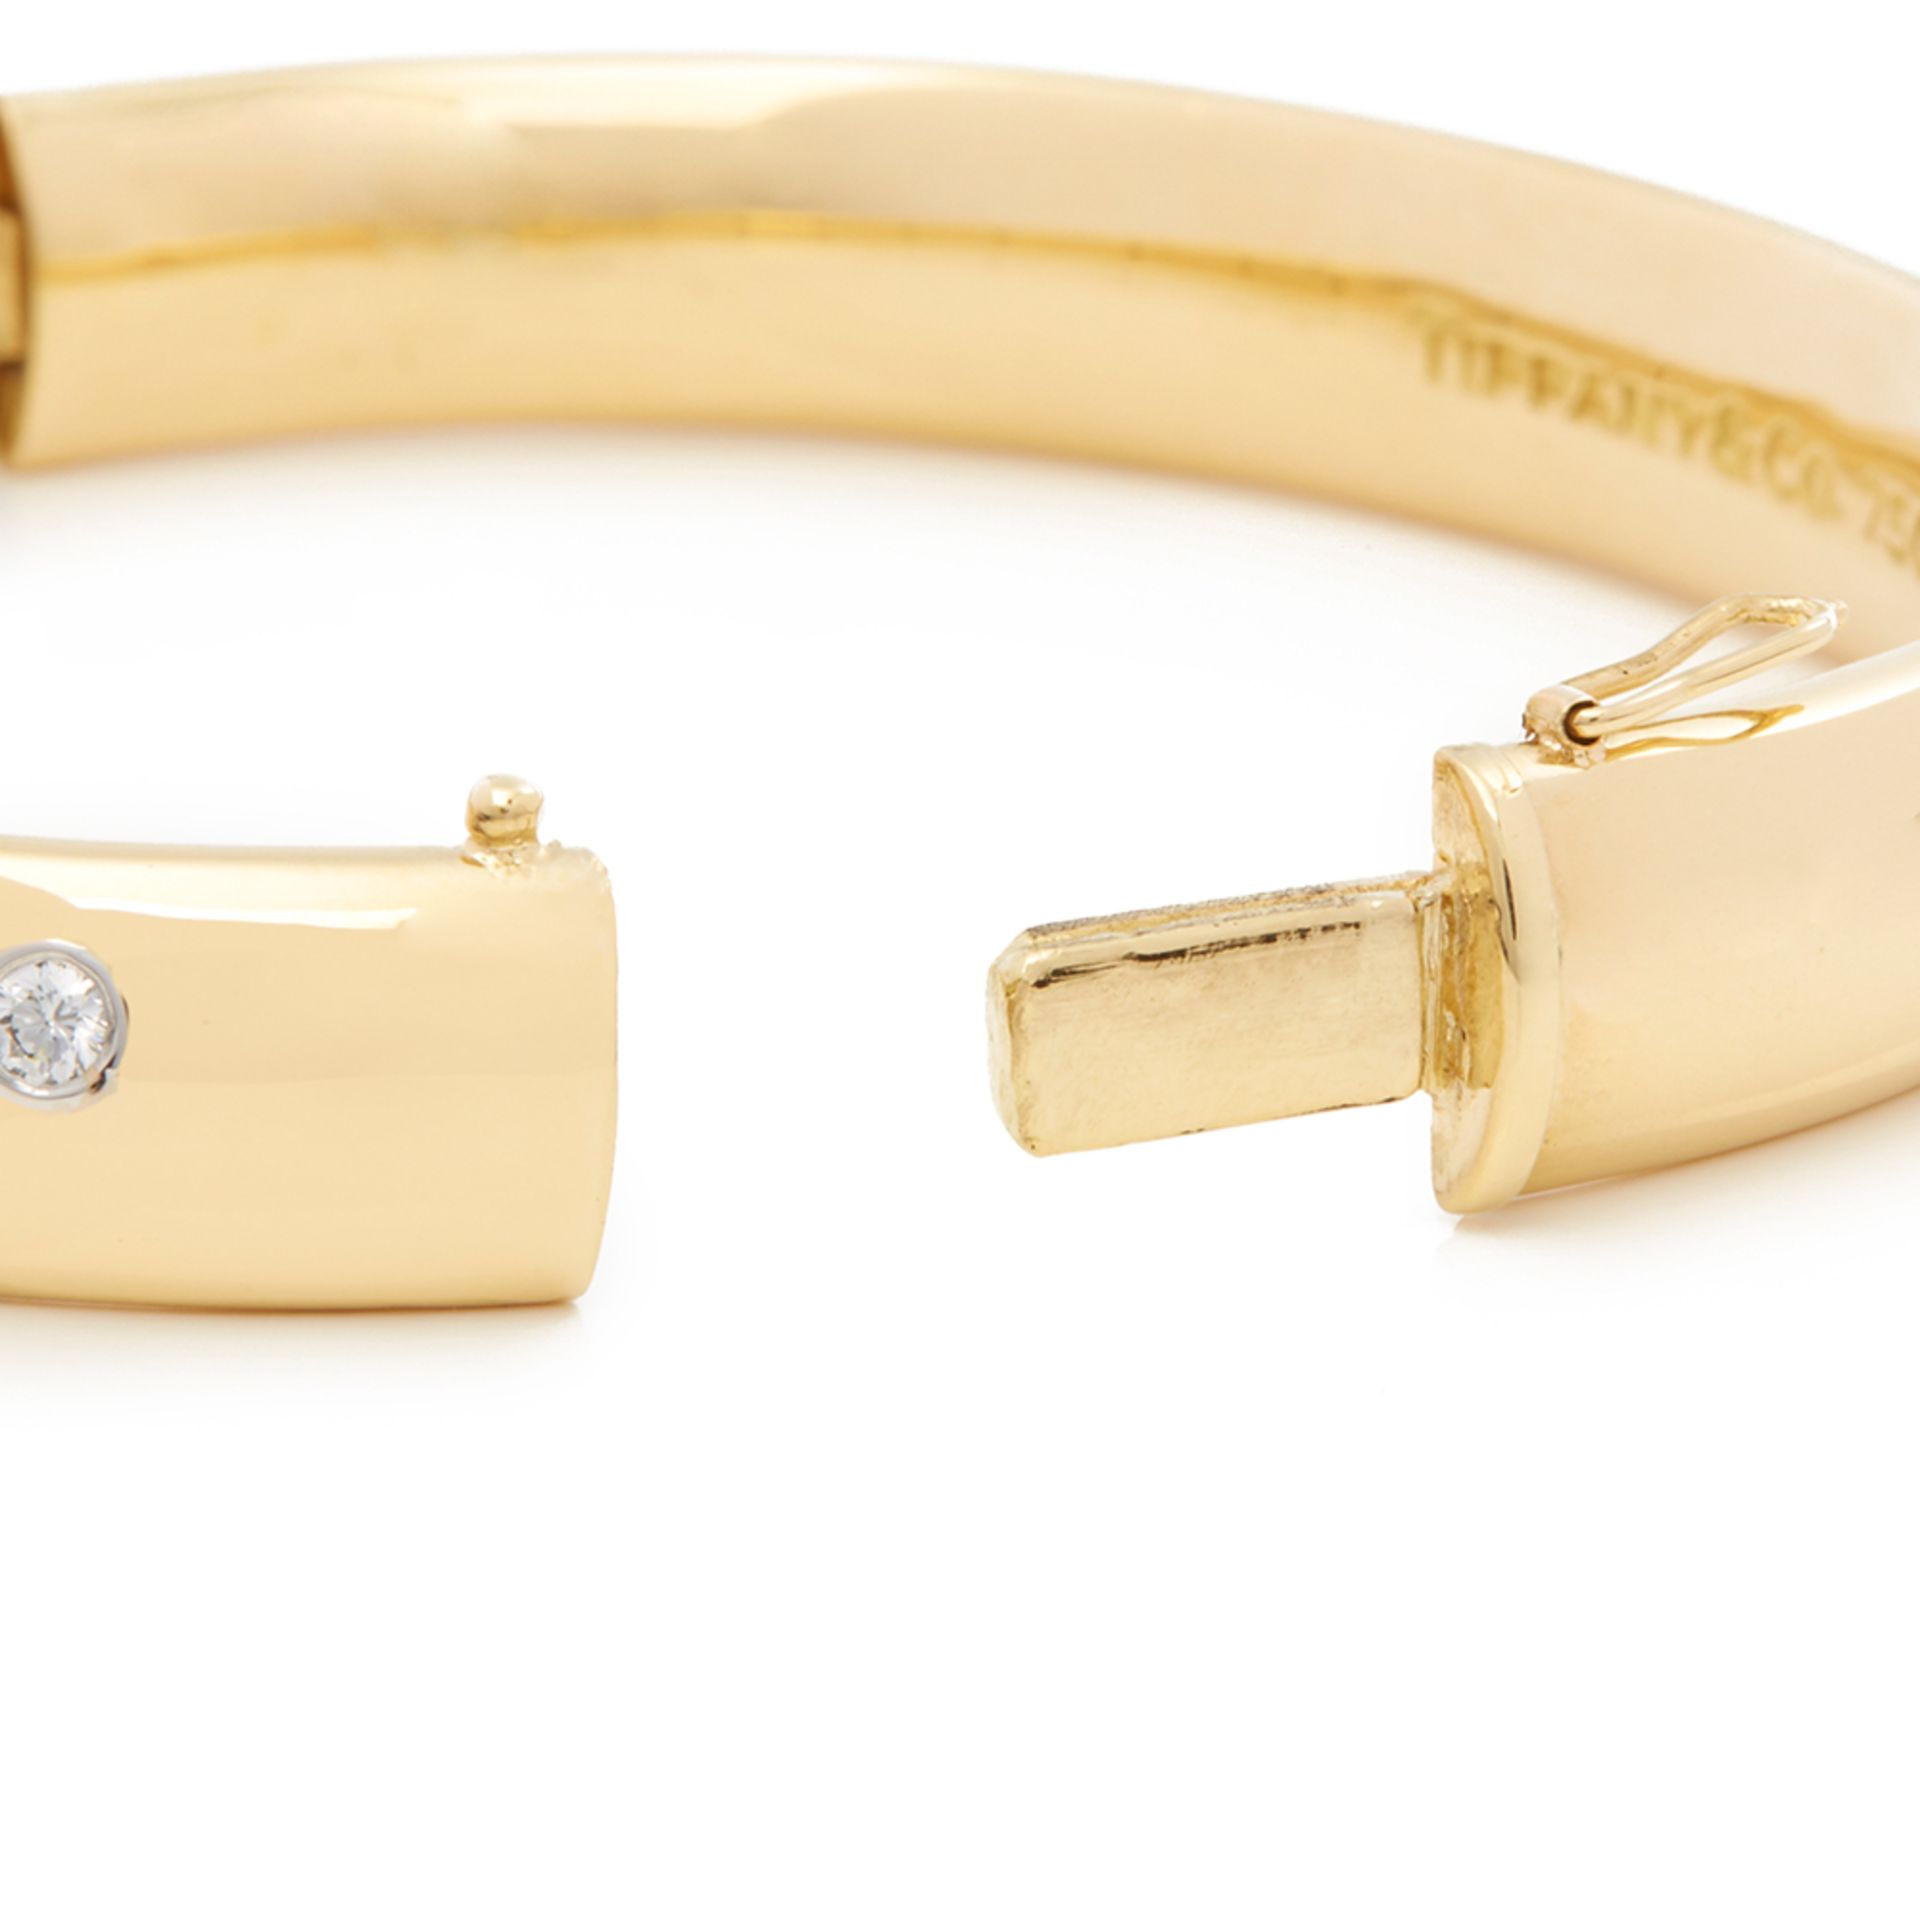 Tiffany & Co. 18k Yellow Gold Diamond Etoile Bracelet - Image 4 of 8